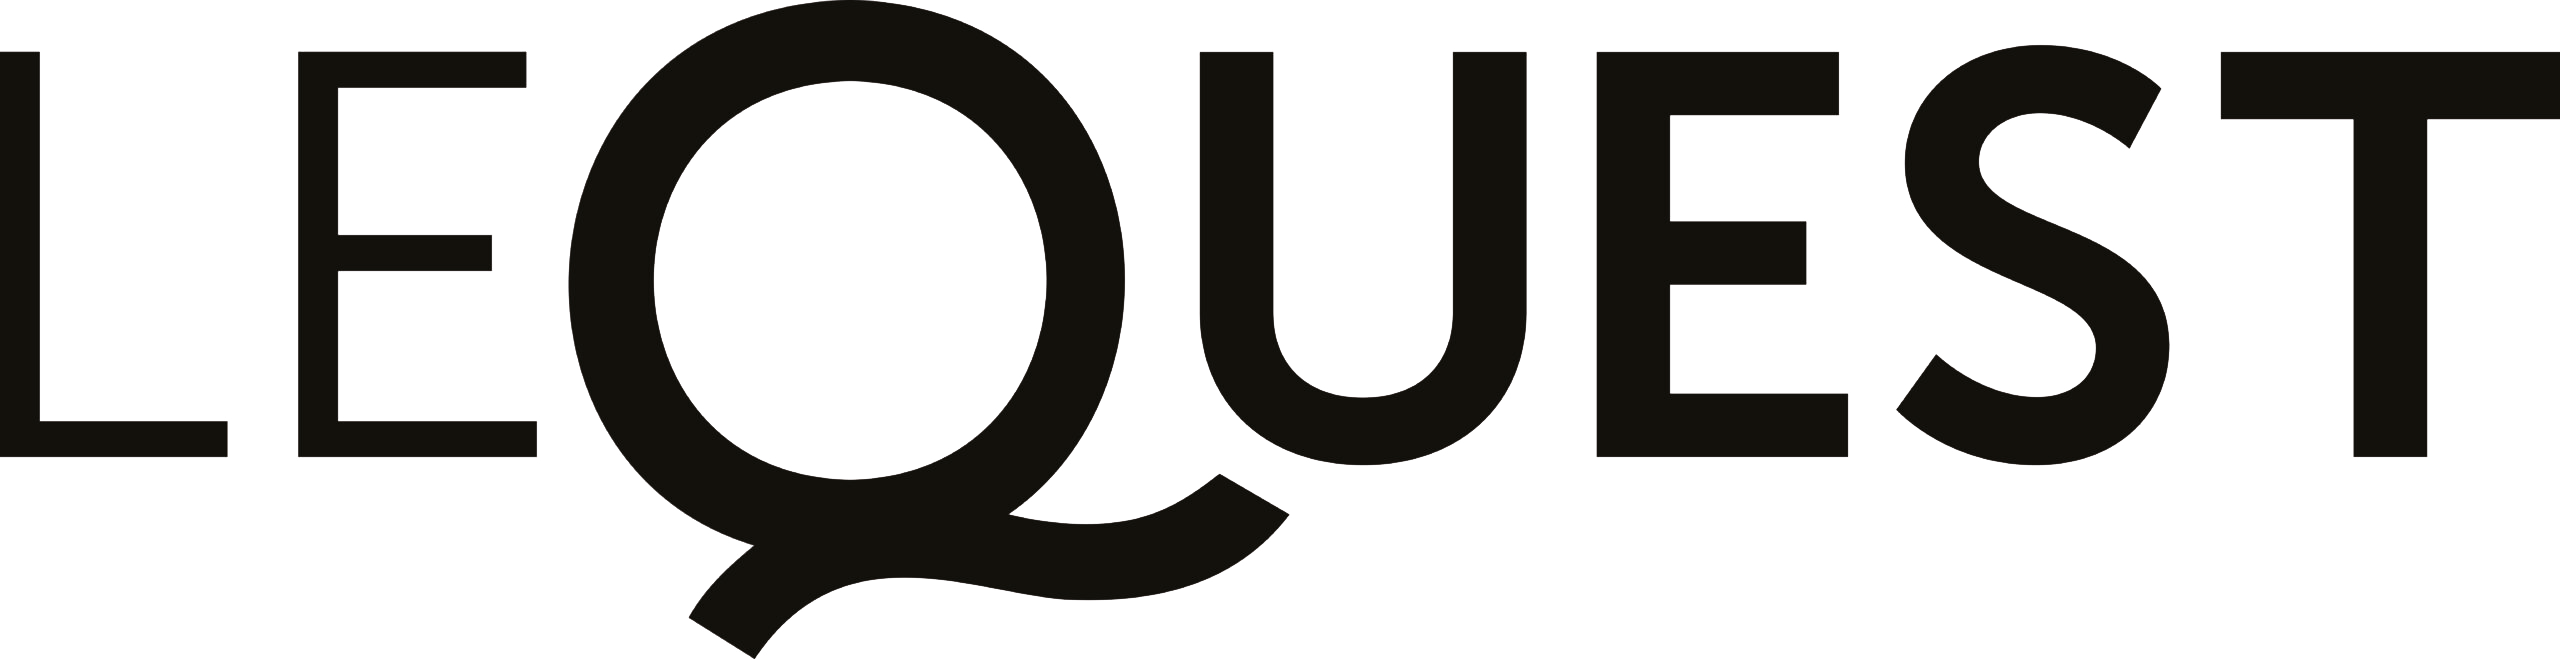 Logo LeQuest